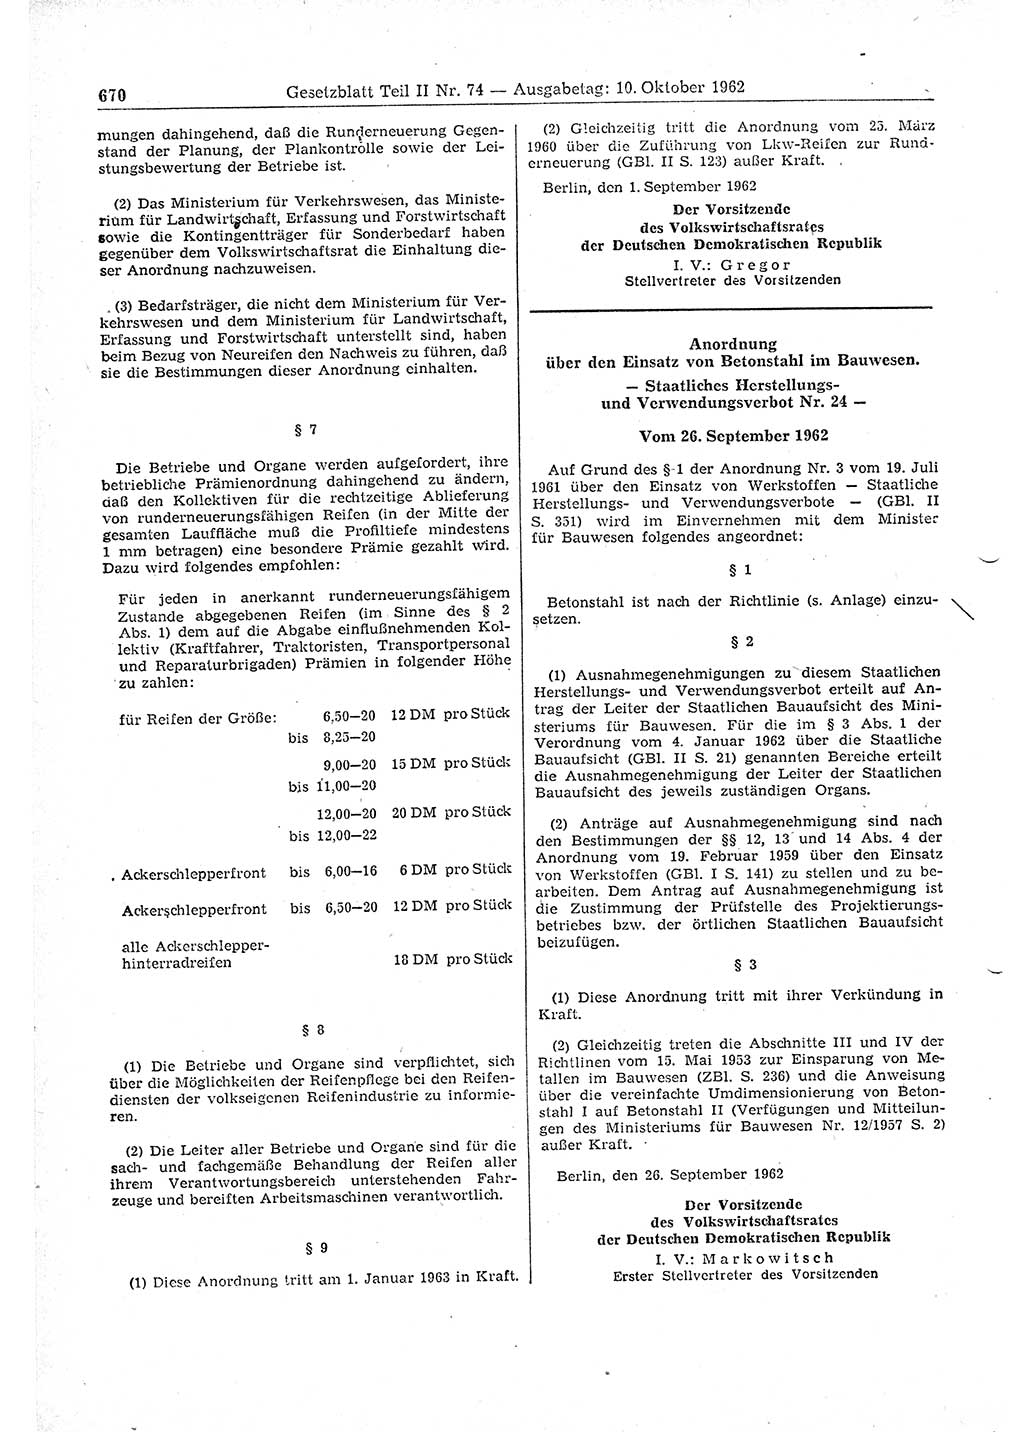 Gesetzblatt (GBl.) der Deutschen Demokratischen Republik (DDR) Teil ⅠⅠ 1962, Seite 670 (GBl. DDR ⅠⅠ 1962, S. 670)